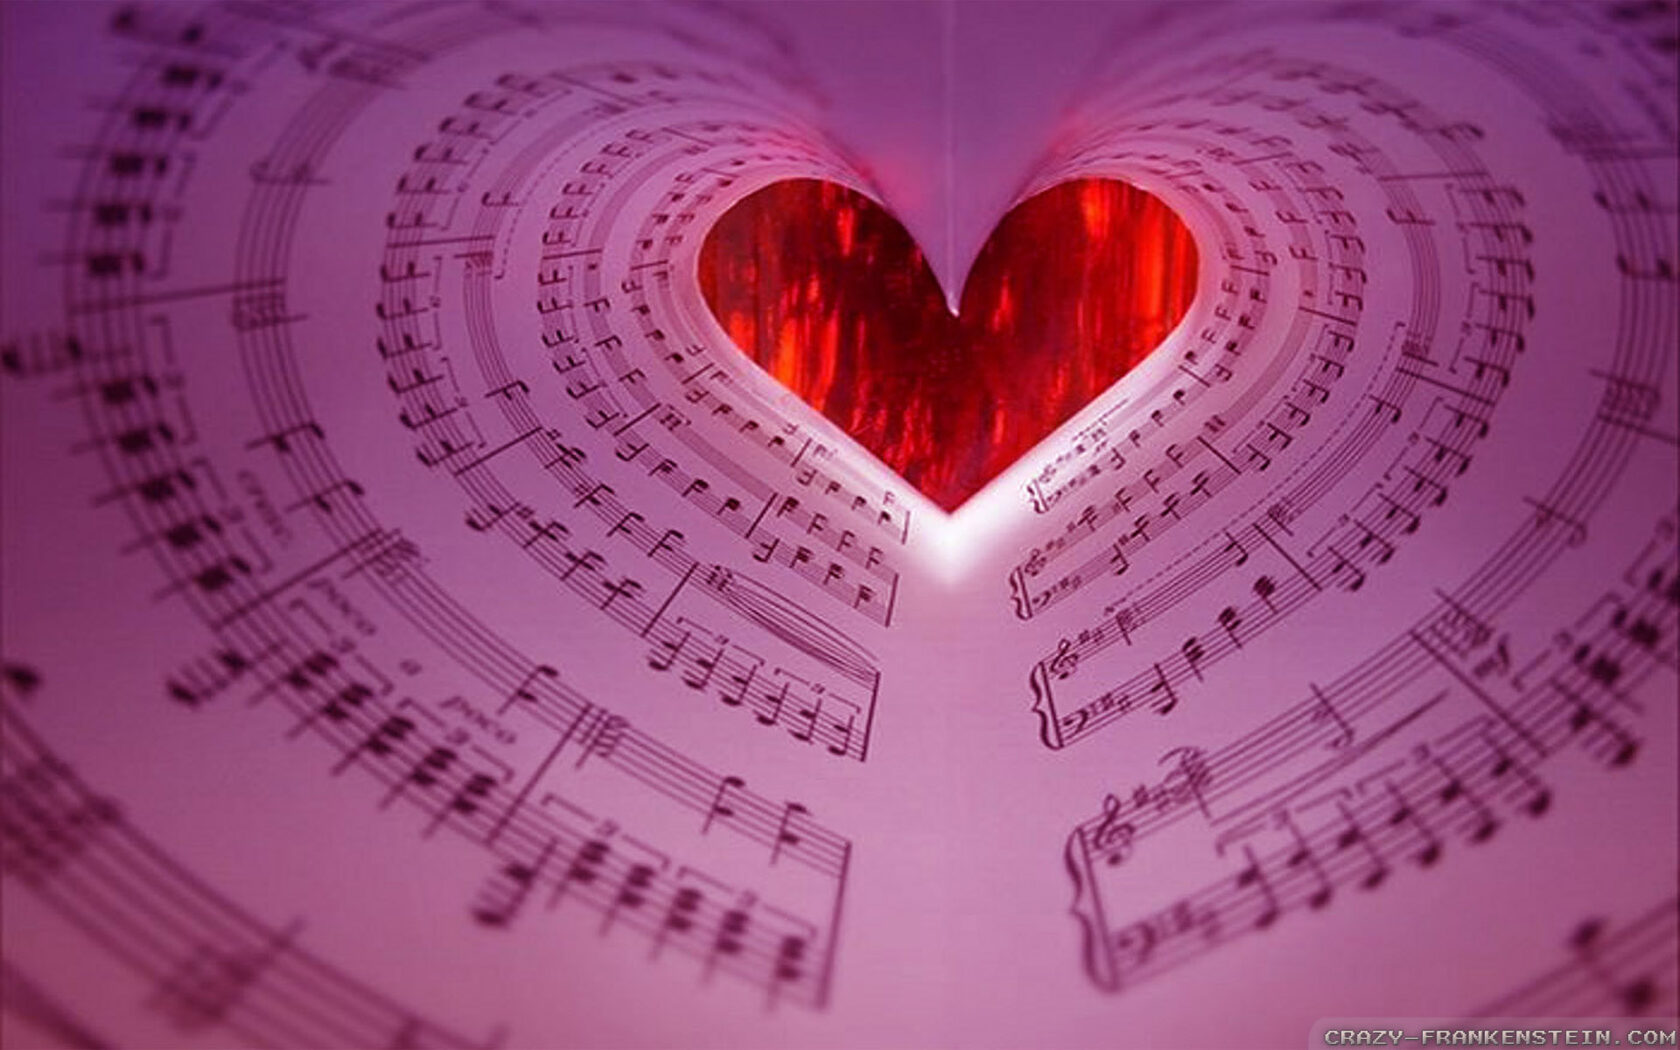 Прекрасное звучание. Музыкальные картинки. Музыкальное сердце. Международный день музыки. Красивые музыкальные картинки.